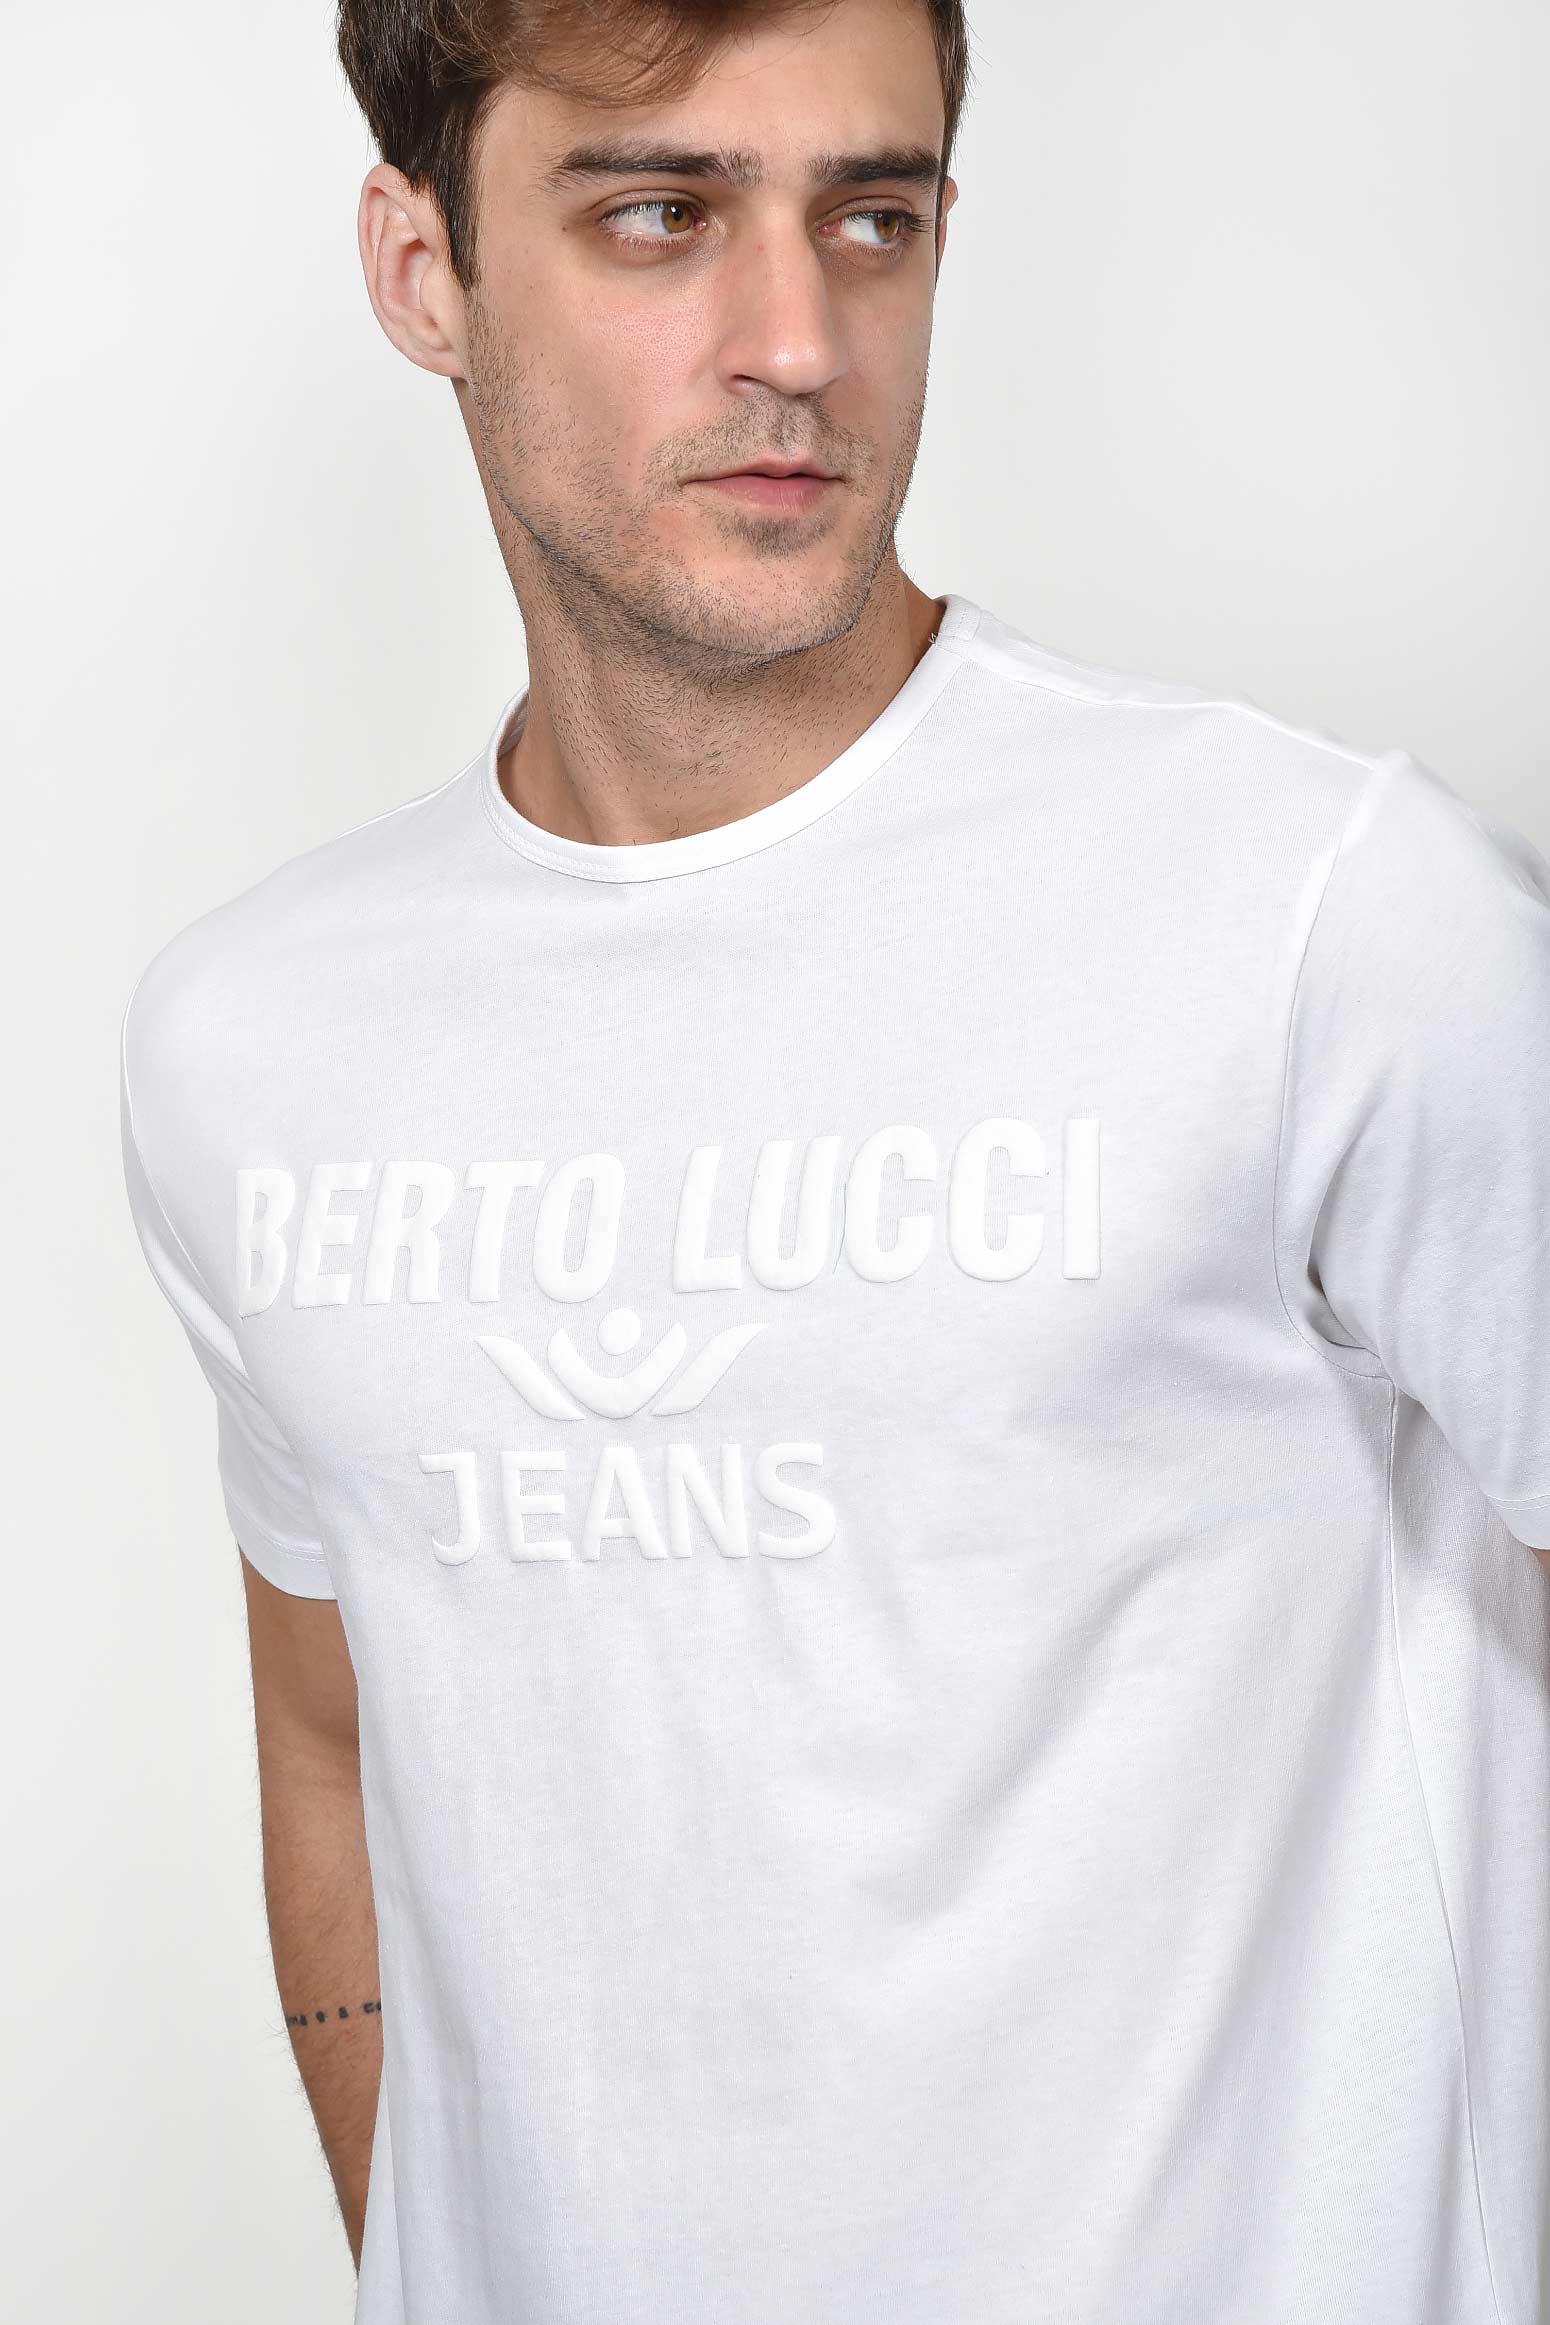 ανδρικό-καλοκαιρινό-t-shirt-με-κέντημα-berto-lucci